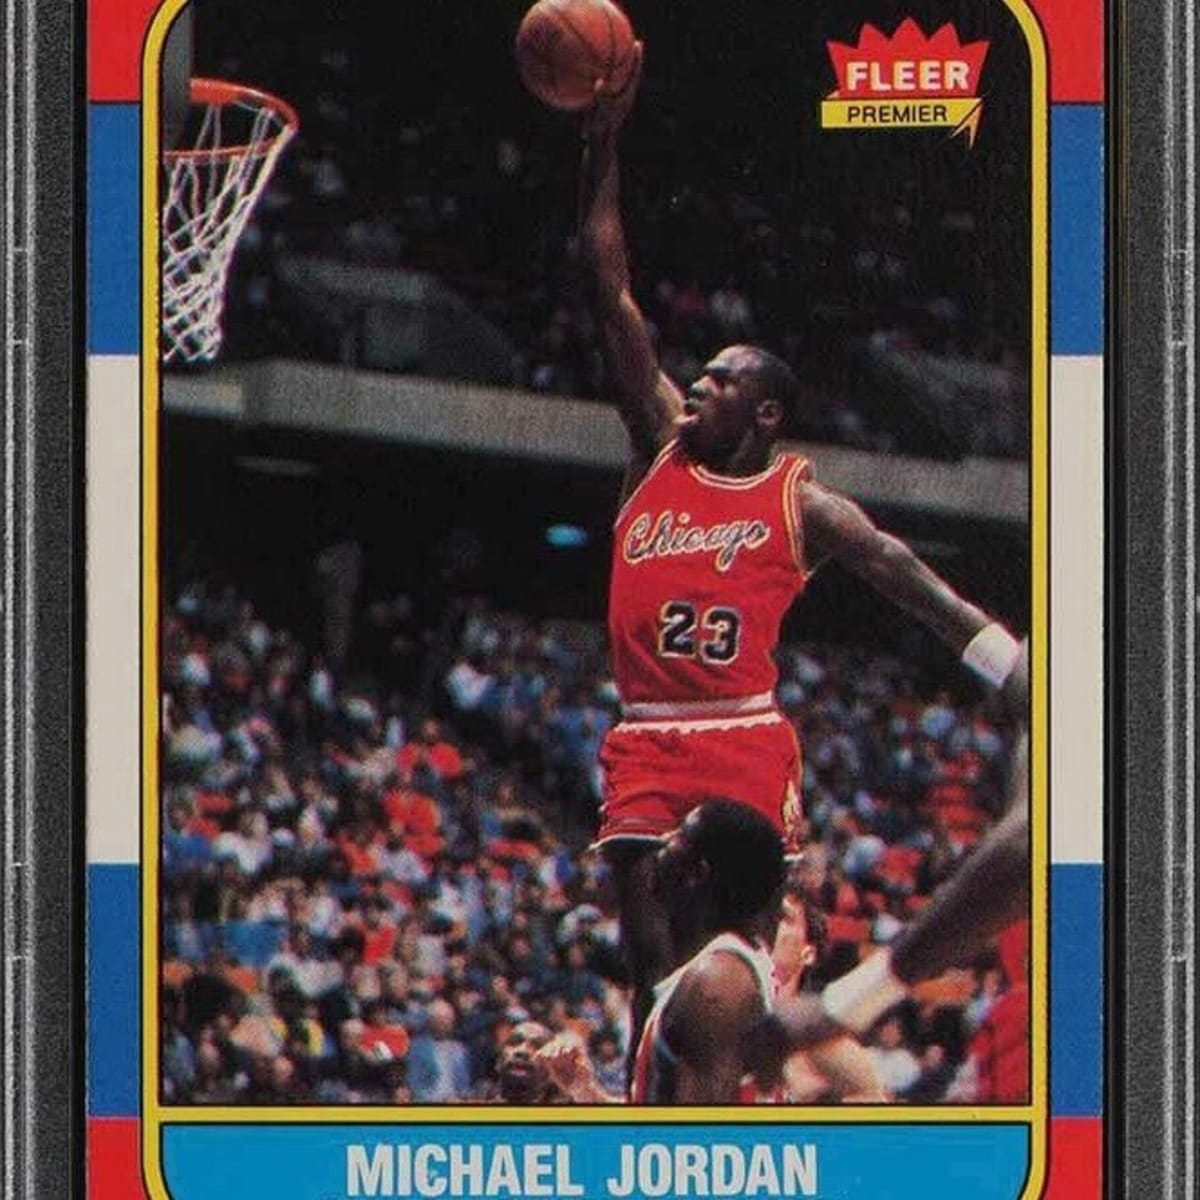 1986 michael jordan fleer